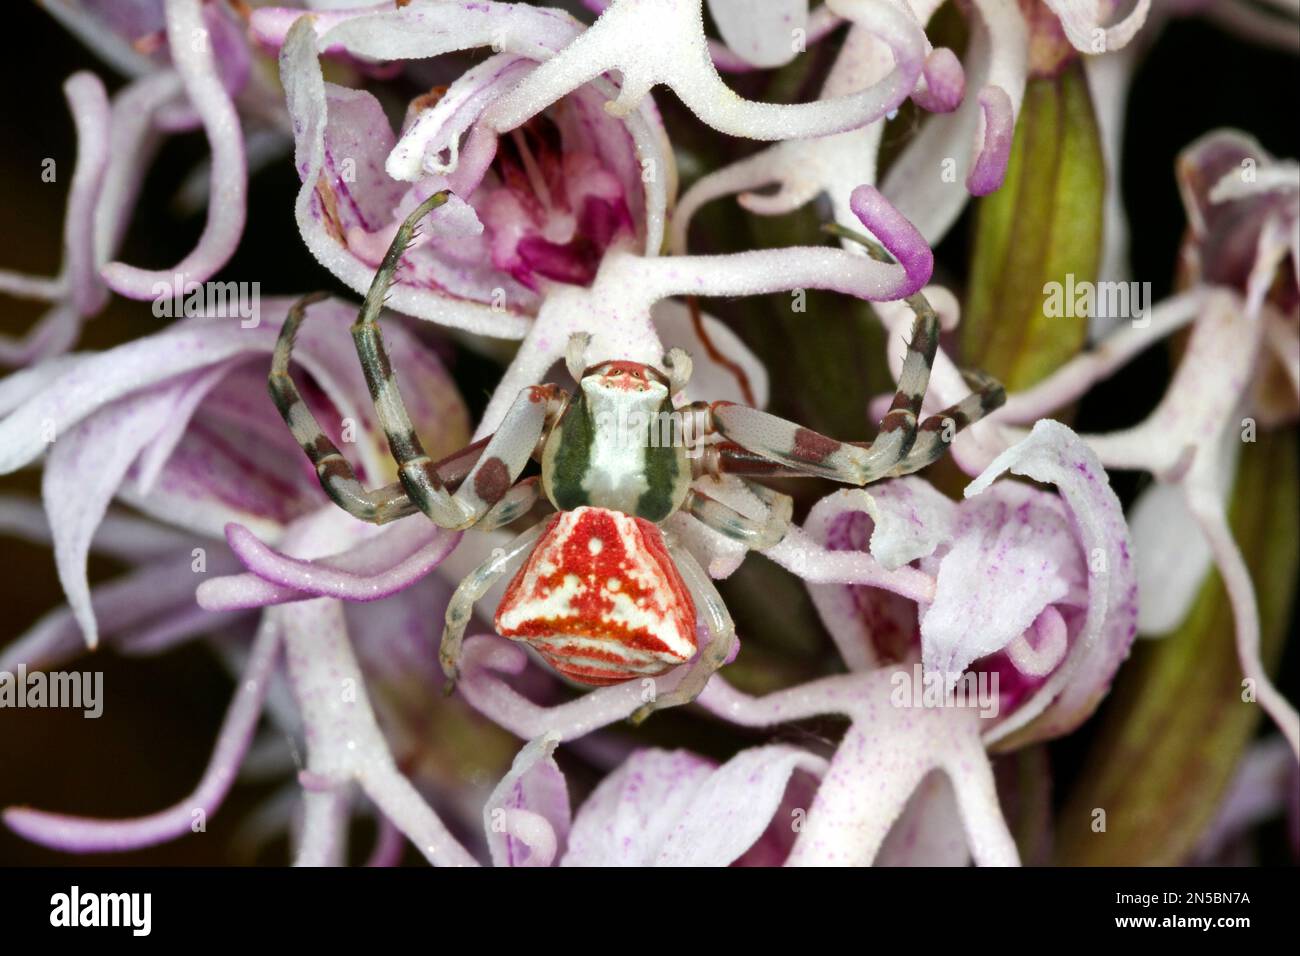 Araignée de crabe (Thomisus onustus), femelle qui se cache pour la proie, bien camouflée dans les fleurs d'orchidées, Allemagne Banque D'Images